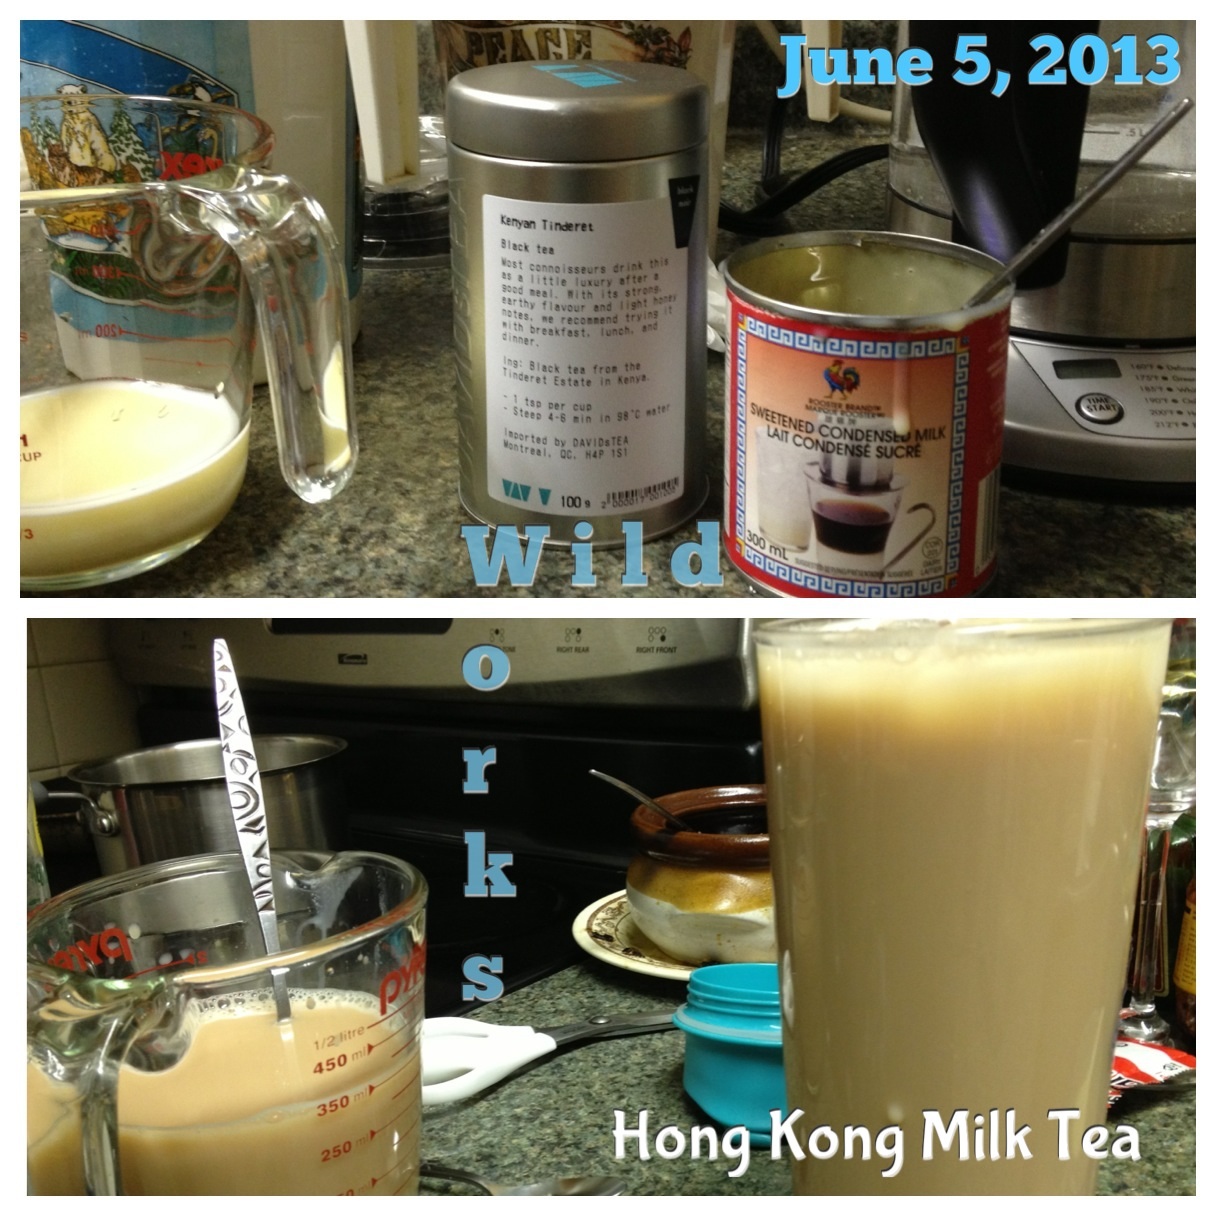 Hong Kong Milk Tea Frame